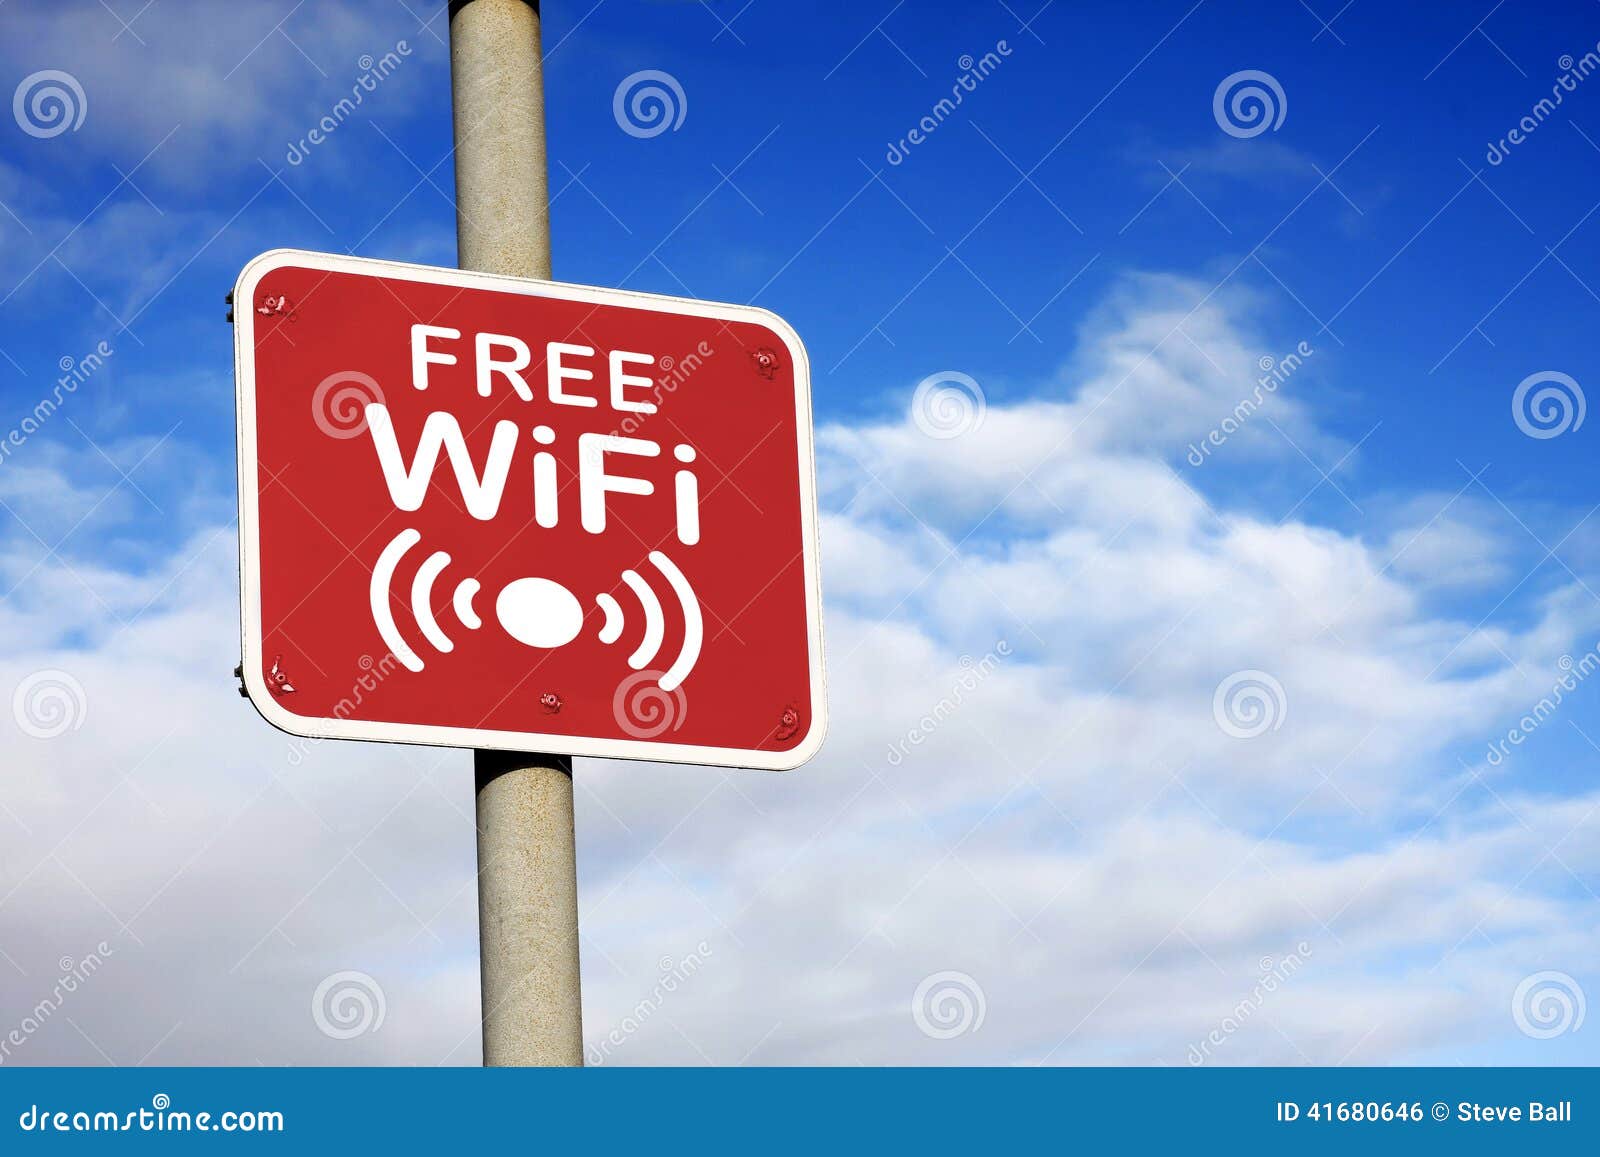 free wifi sign